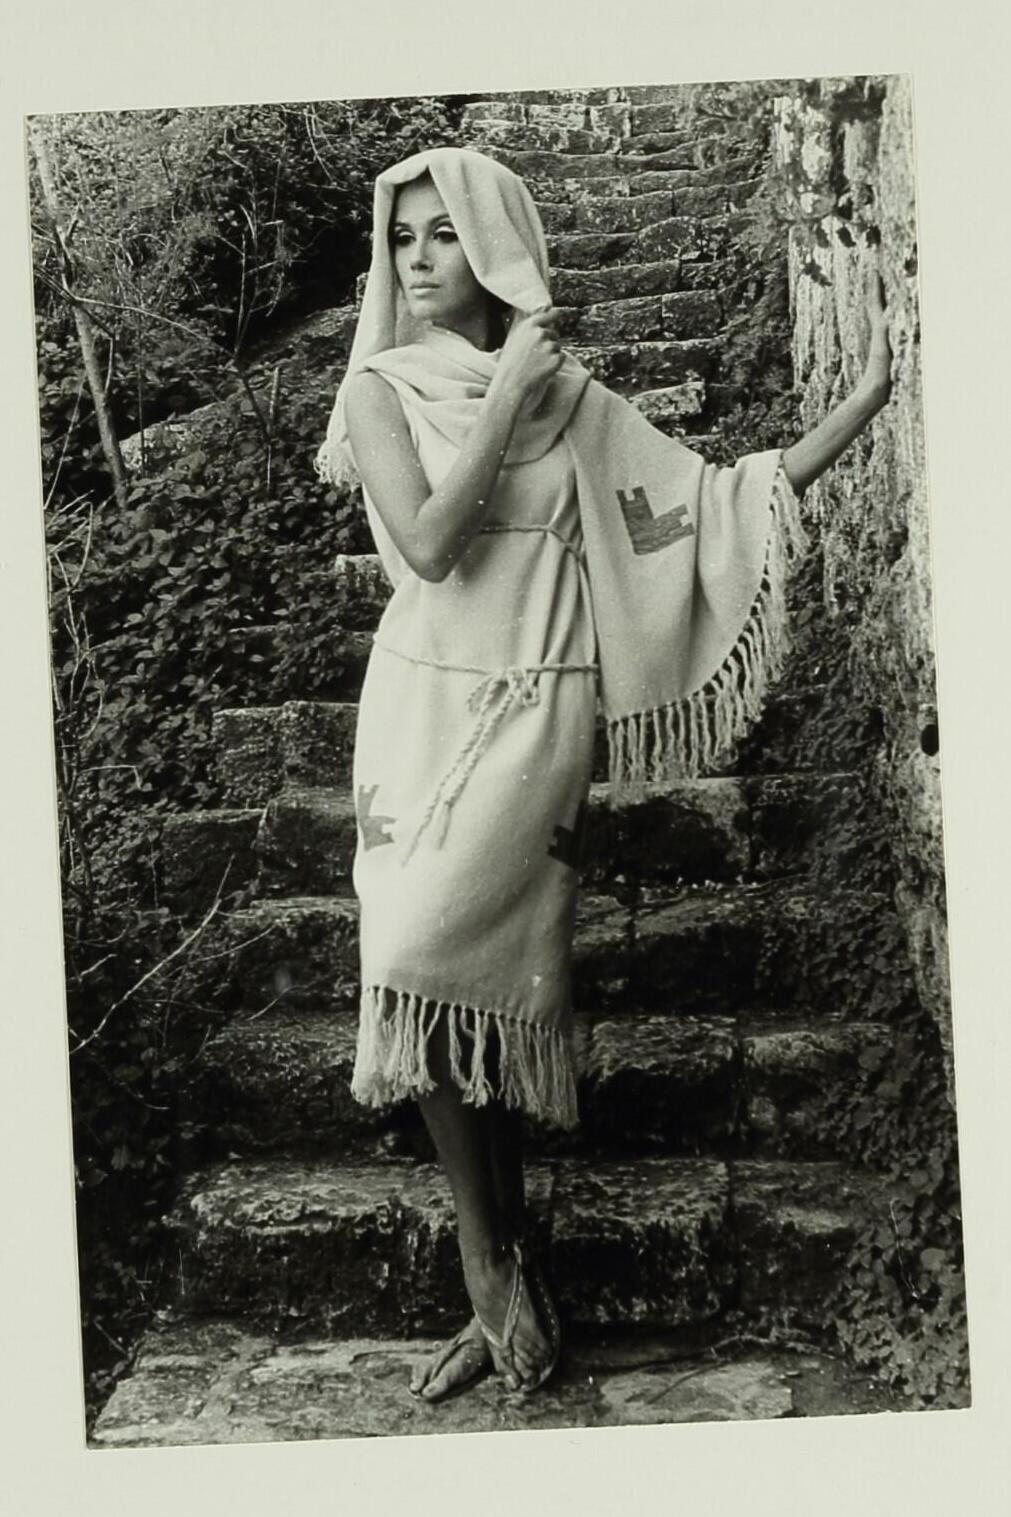 מערכת לבוש בהשראת בדי נחל חבר, 1963, עיצוב: נאורה ורשבסקי ופיני לייטרסדורף. מתוך התערוכה "משכית 70/30/10"